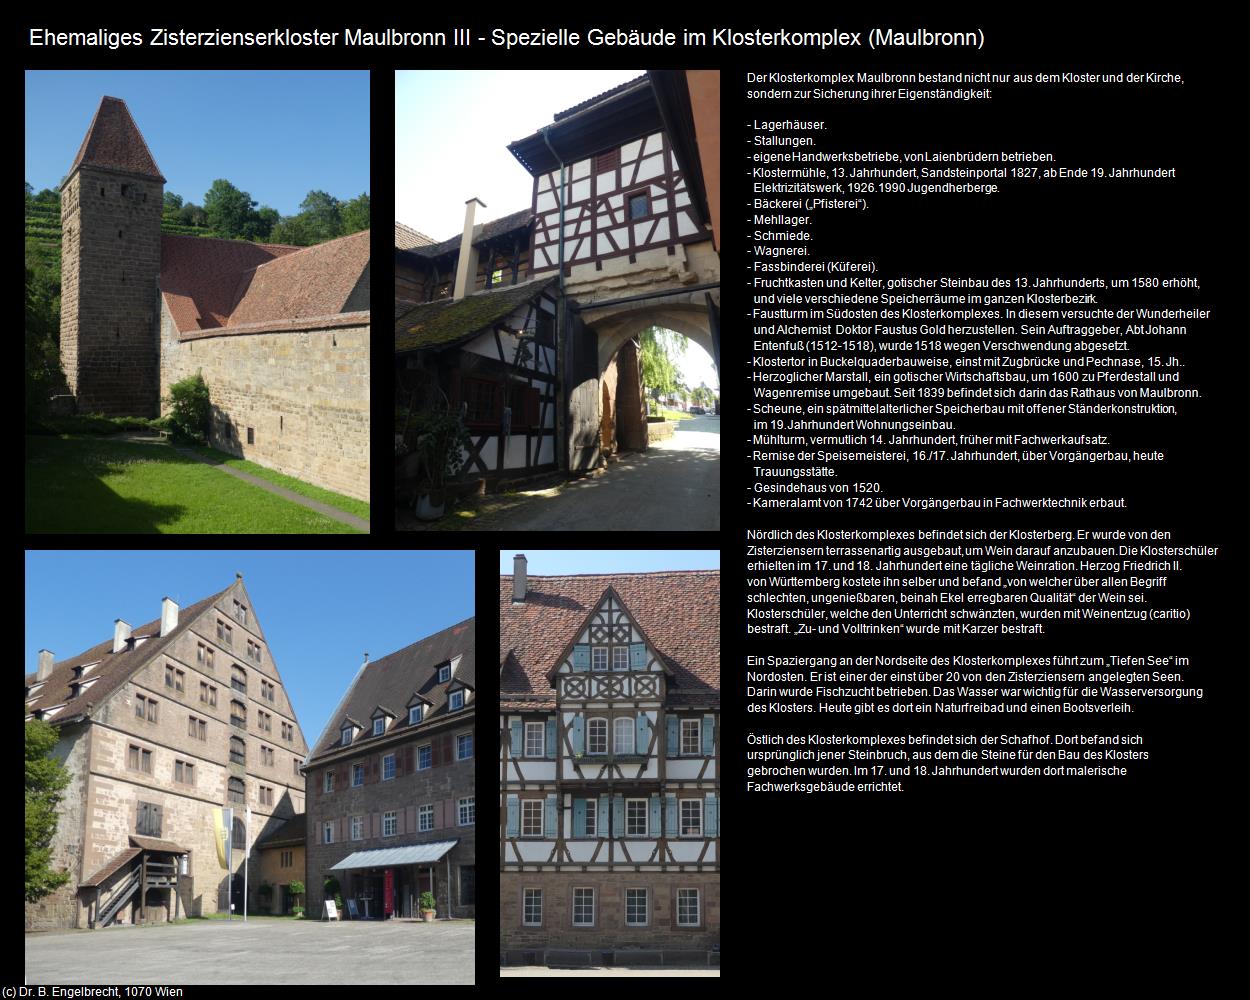 Spezielle Gebäude im Klosterkomplex III (Maulbronn) in Kulturatlas-BADEN-WÜRTTEMBERG